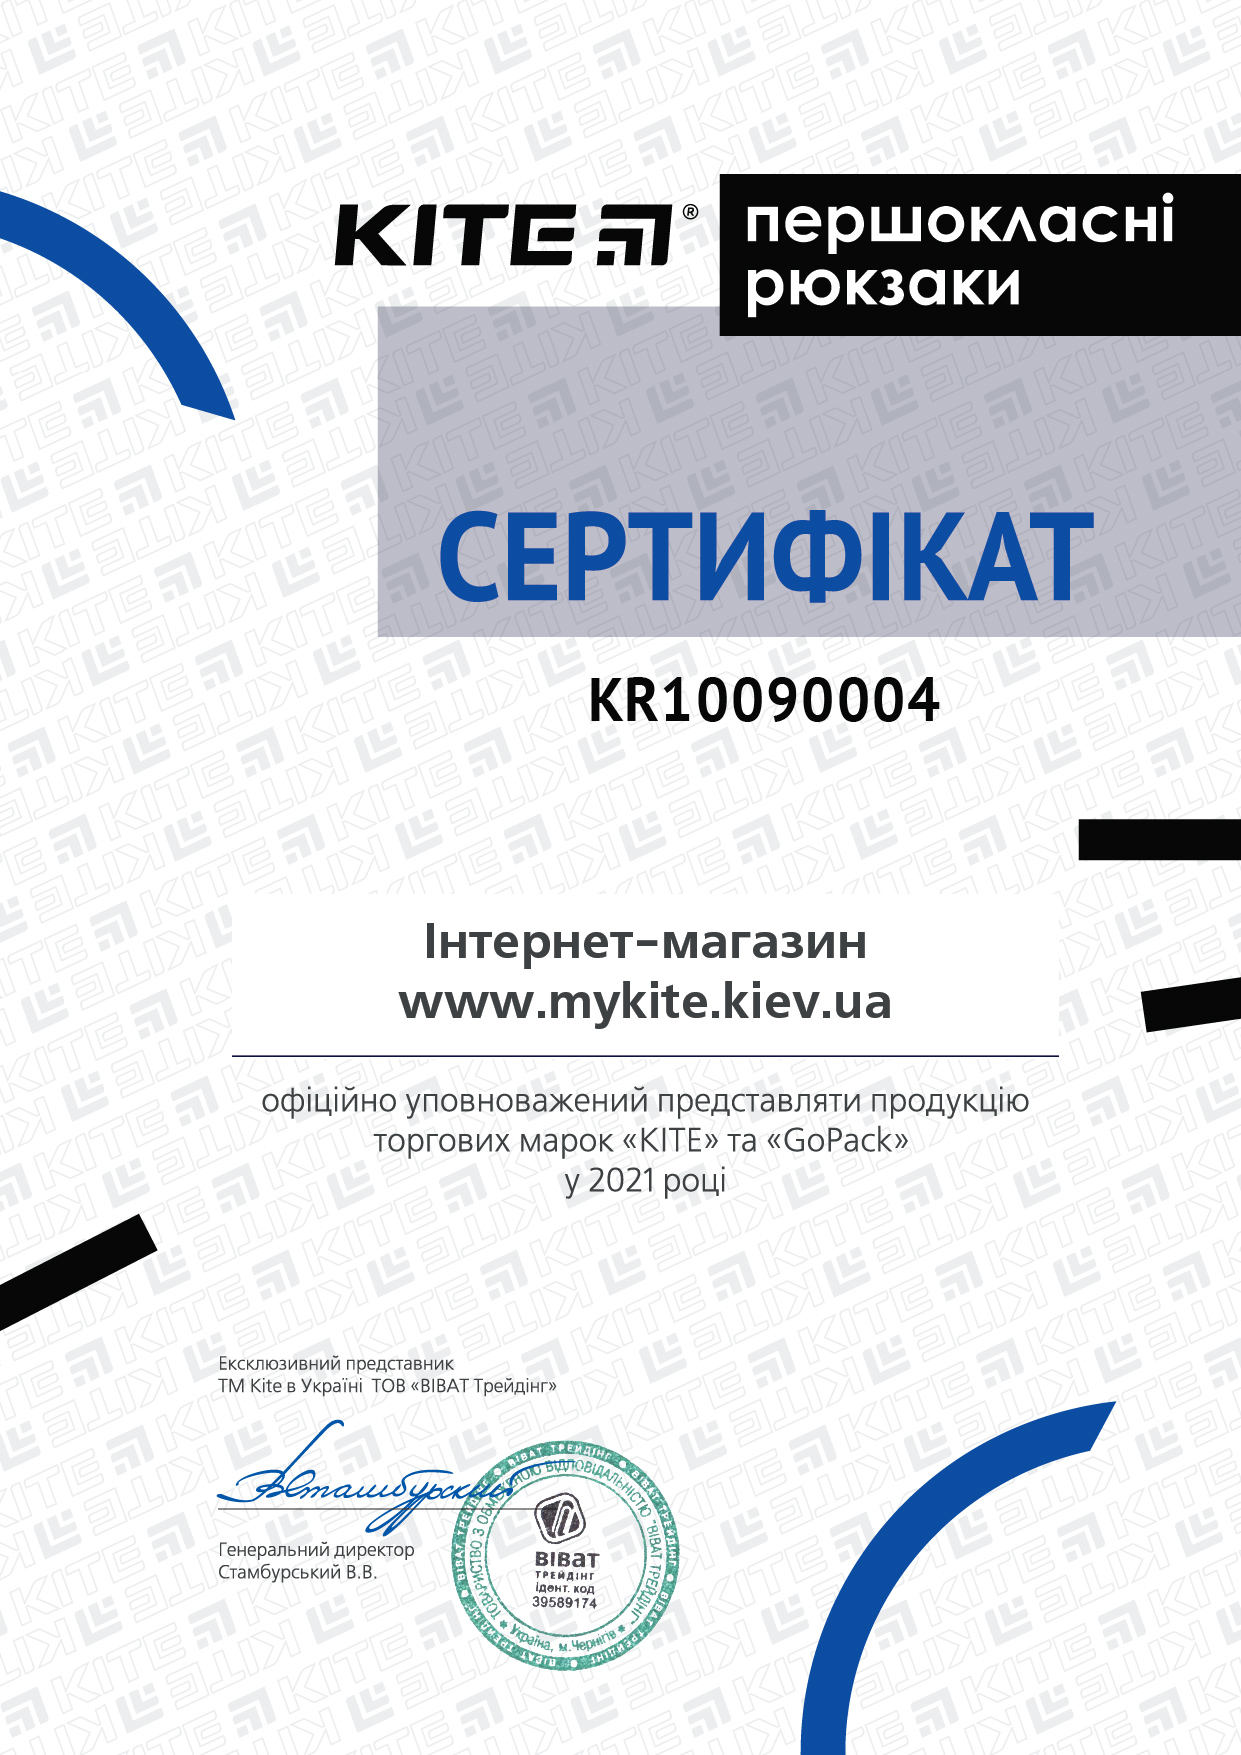 сертифікат офіційного дилера ТМ Kite